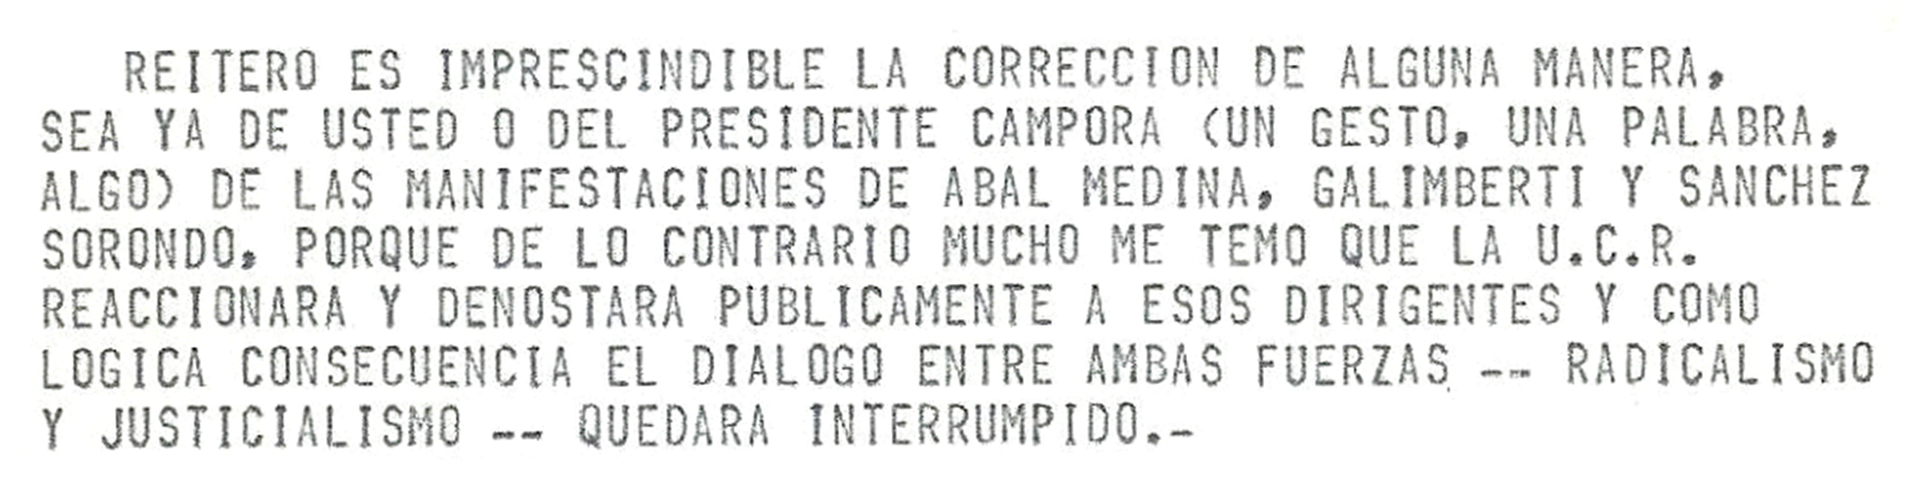 Mensaje de télex: llamado de atención a Perón sobre las declaraciones de Galimberti y otros.